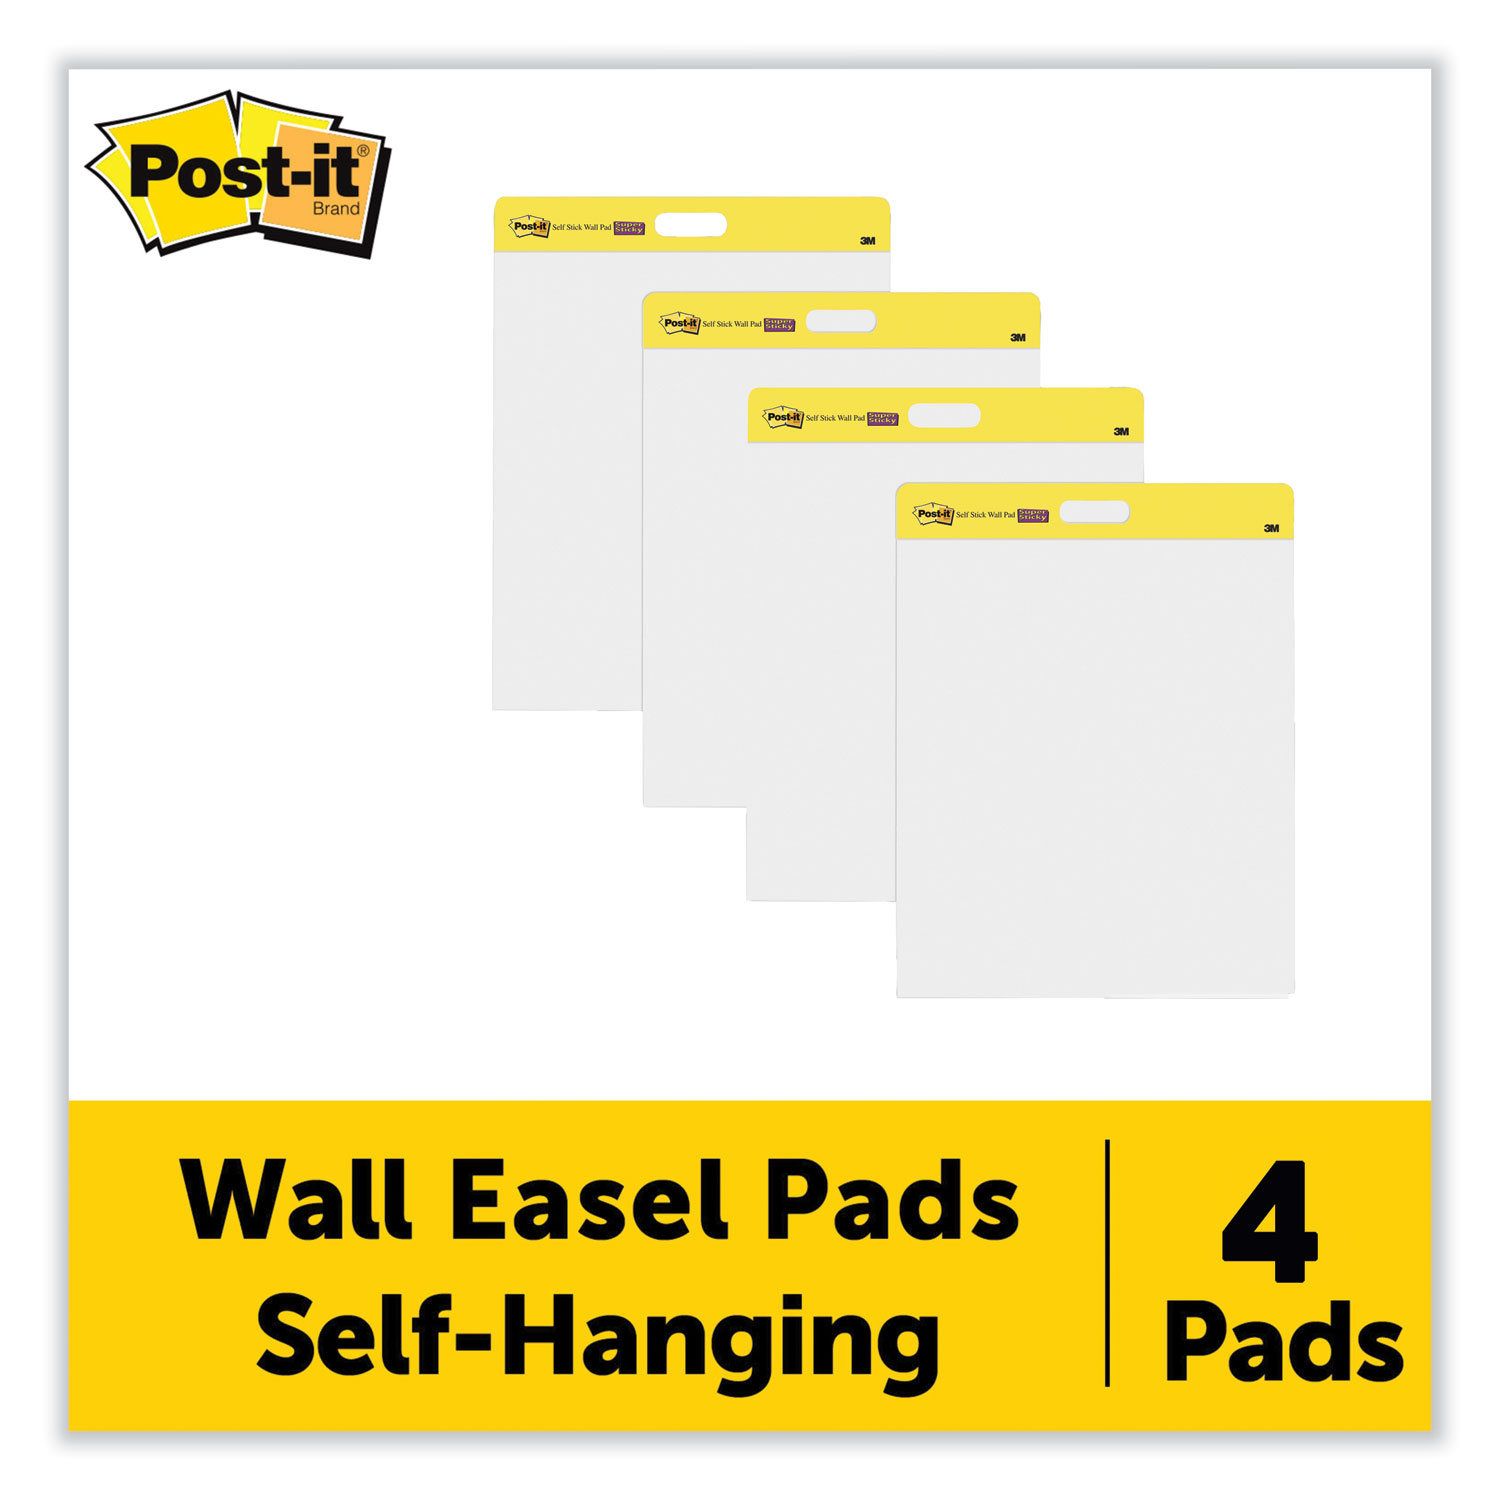 Self-Stick Wall Pad, Unruled, 20 x 23, White, 20 Sheets/Pad, 2